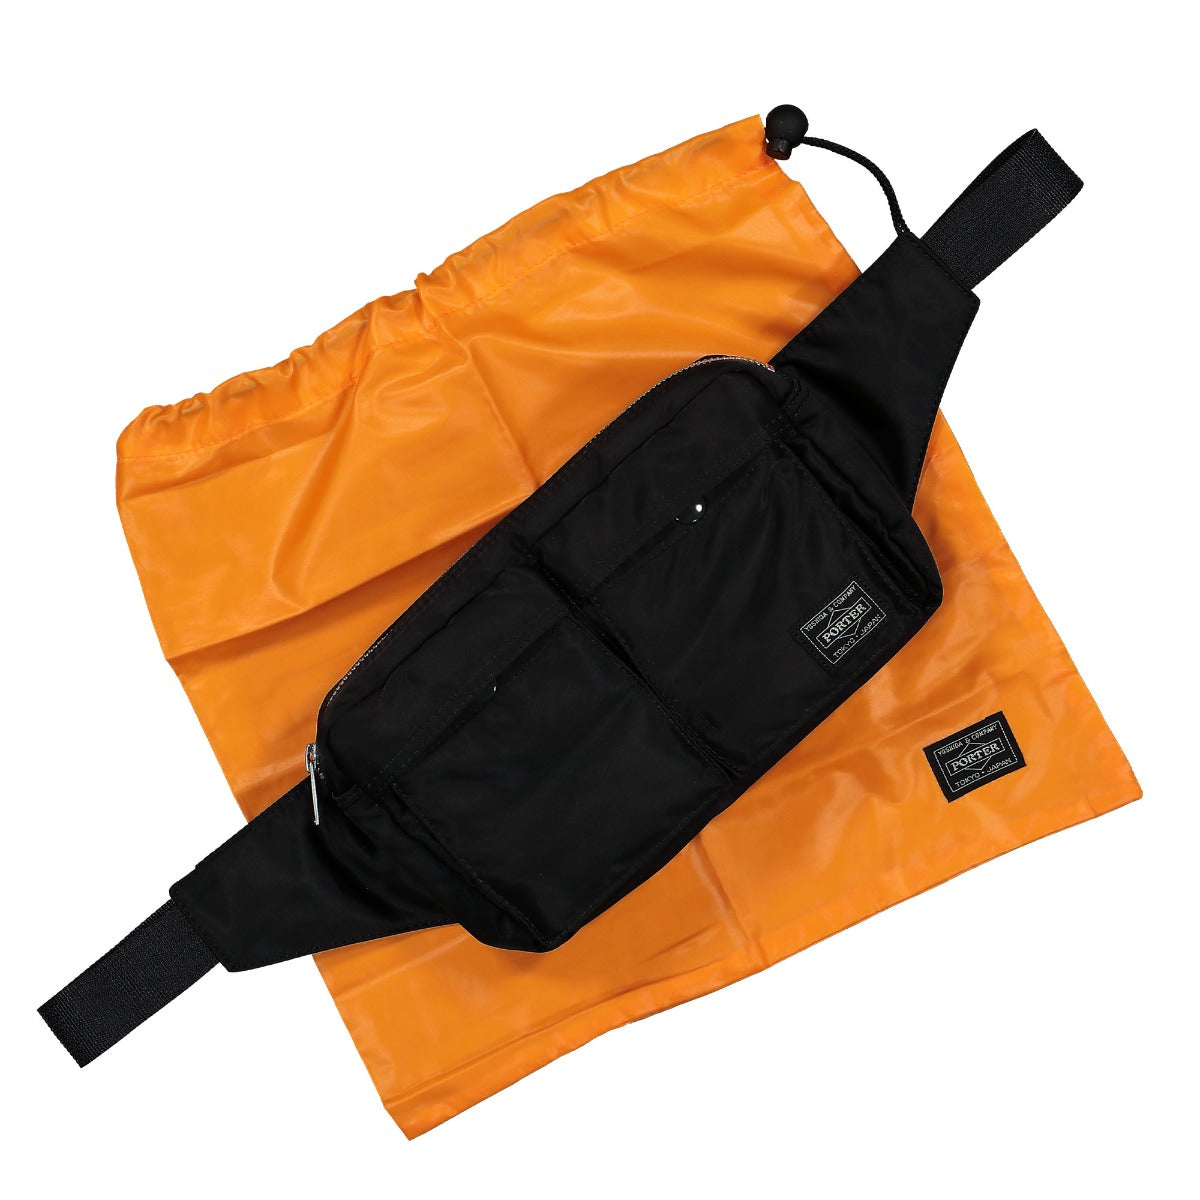 Porter-Yoshida & Co. TANKER WAIST BAG (S) Black